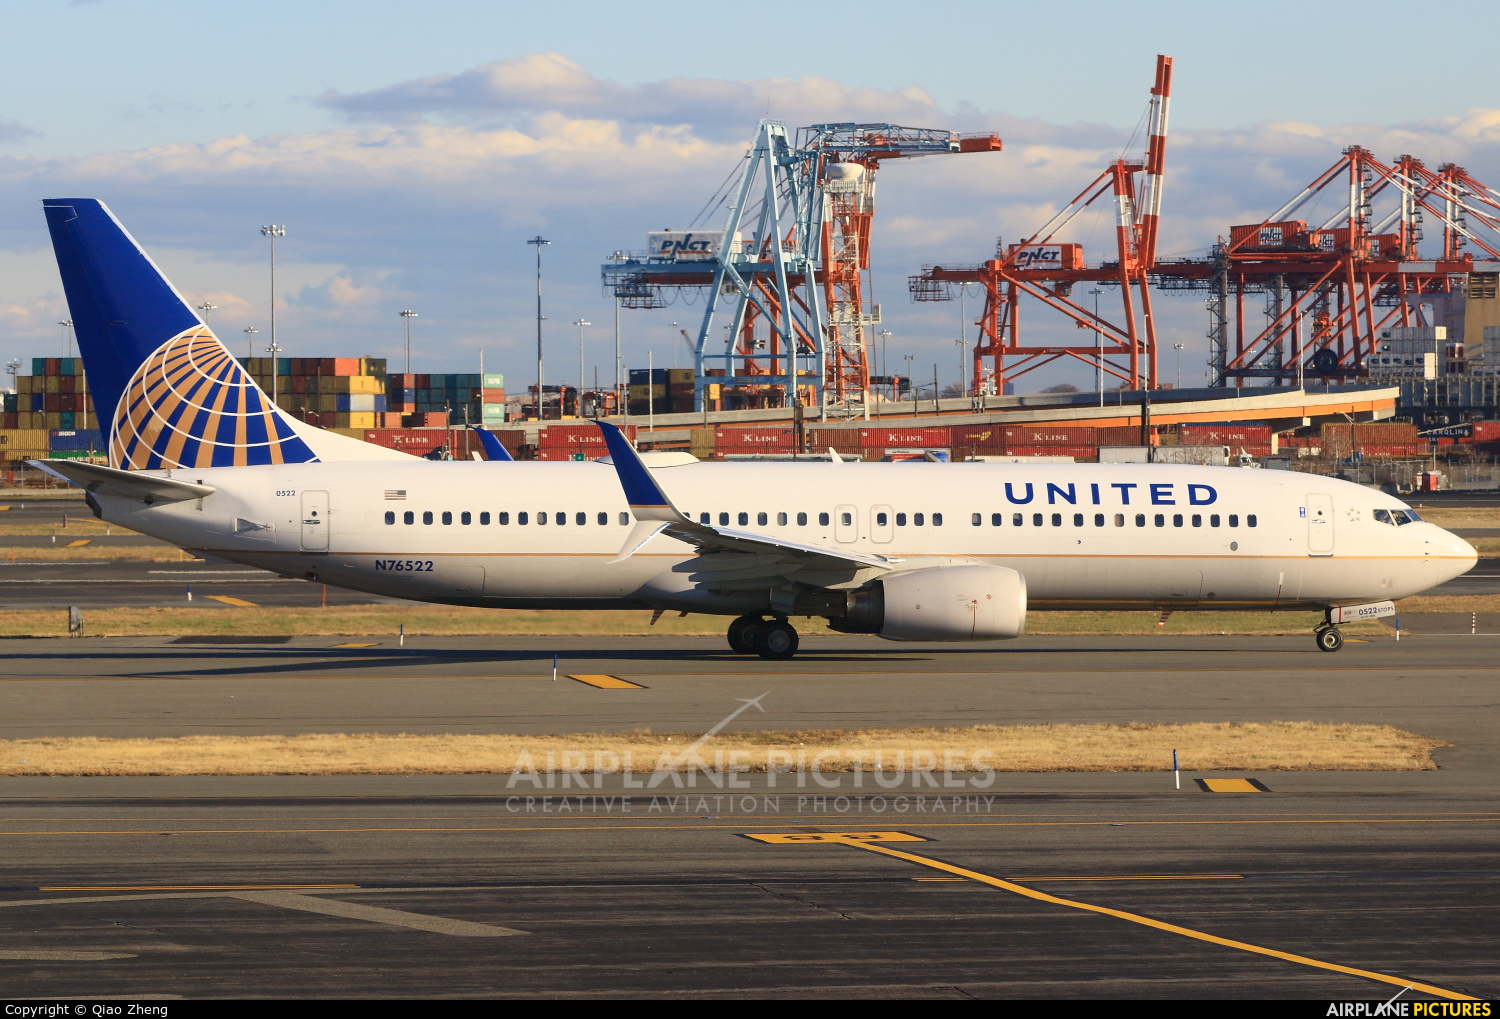 United Airlines N76522 aircraft at Newark Liberty Intl